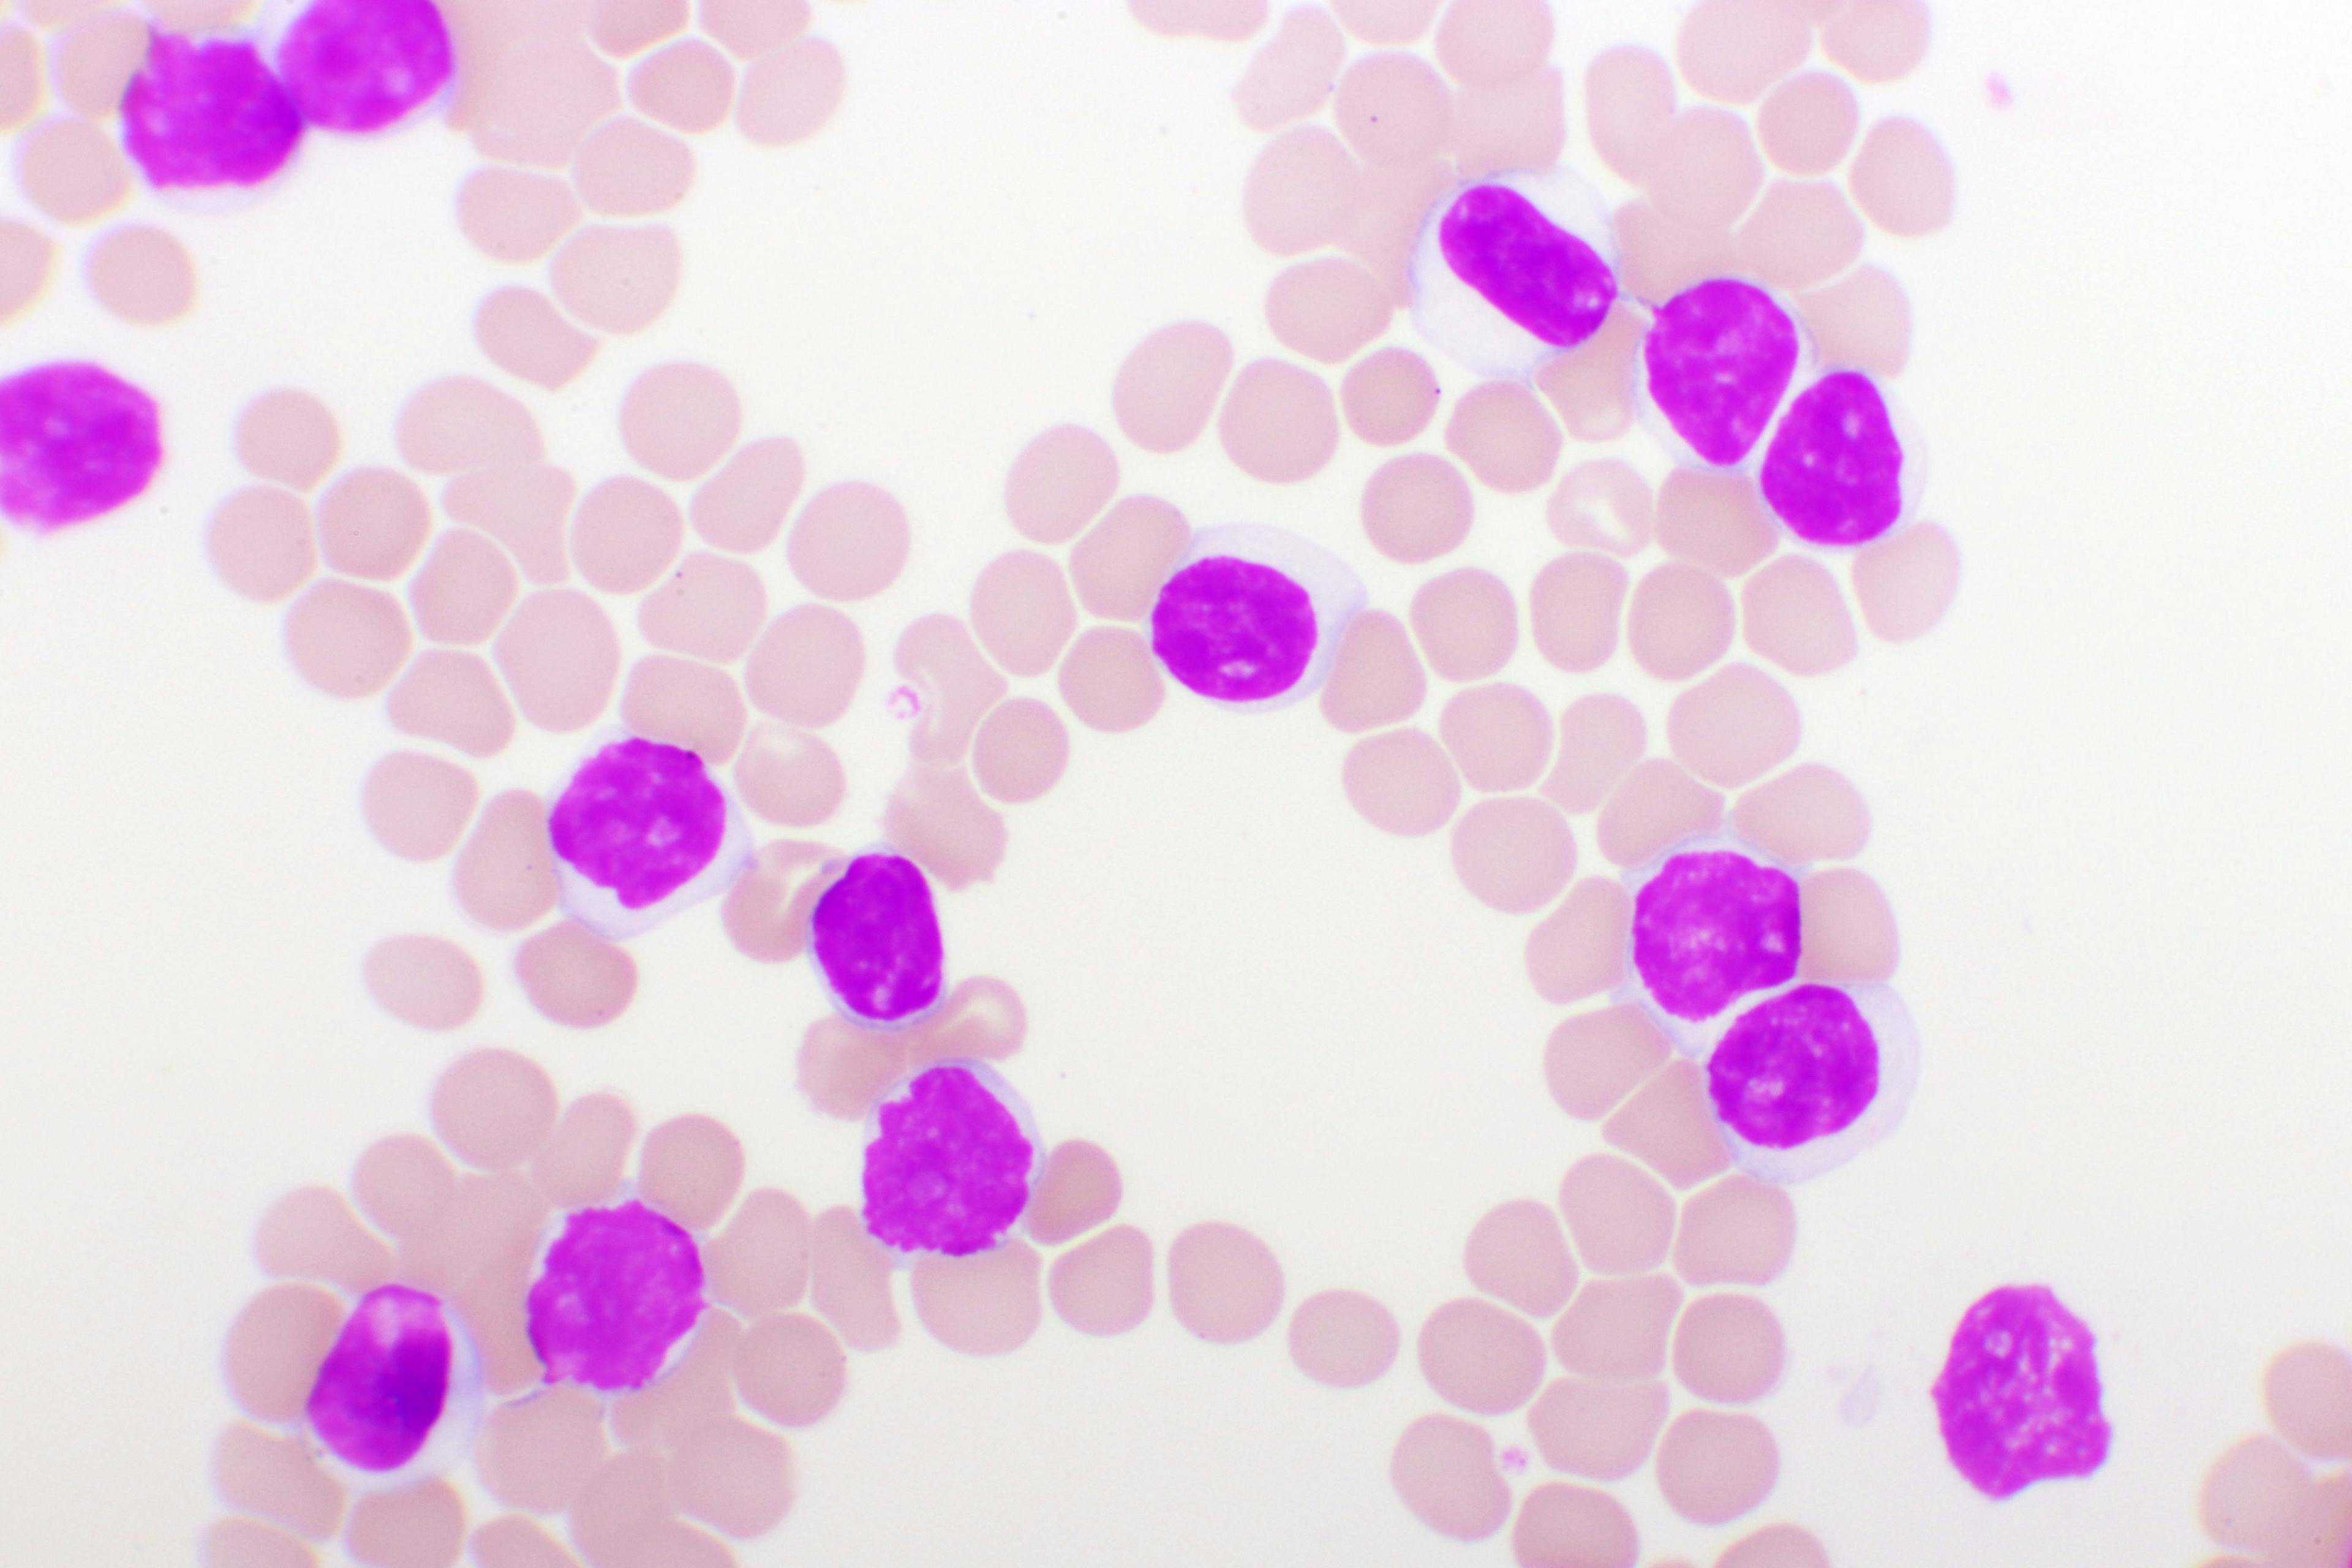 Blood smear of chronic lymphocytic leukemia (CLL), analyze by microscope: © jarun011 - stock.adobe.com


